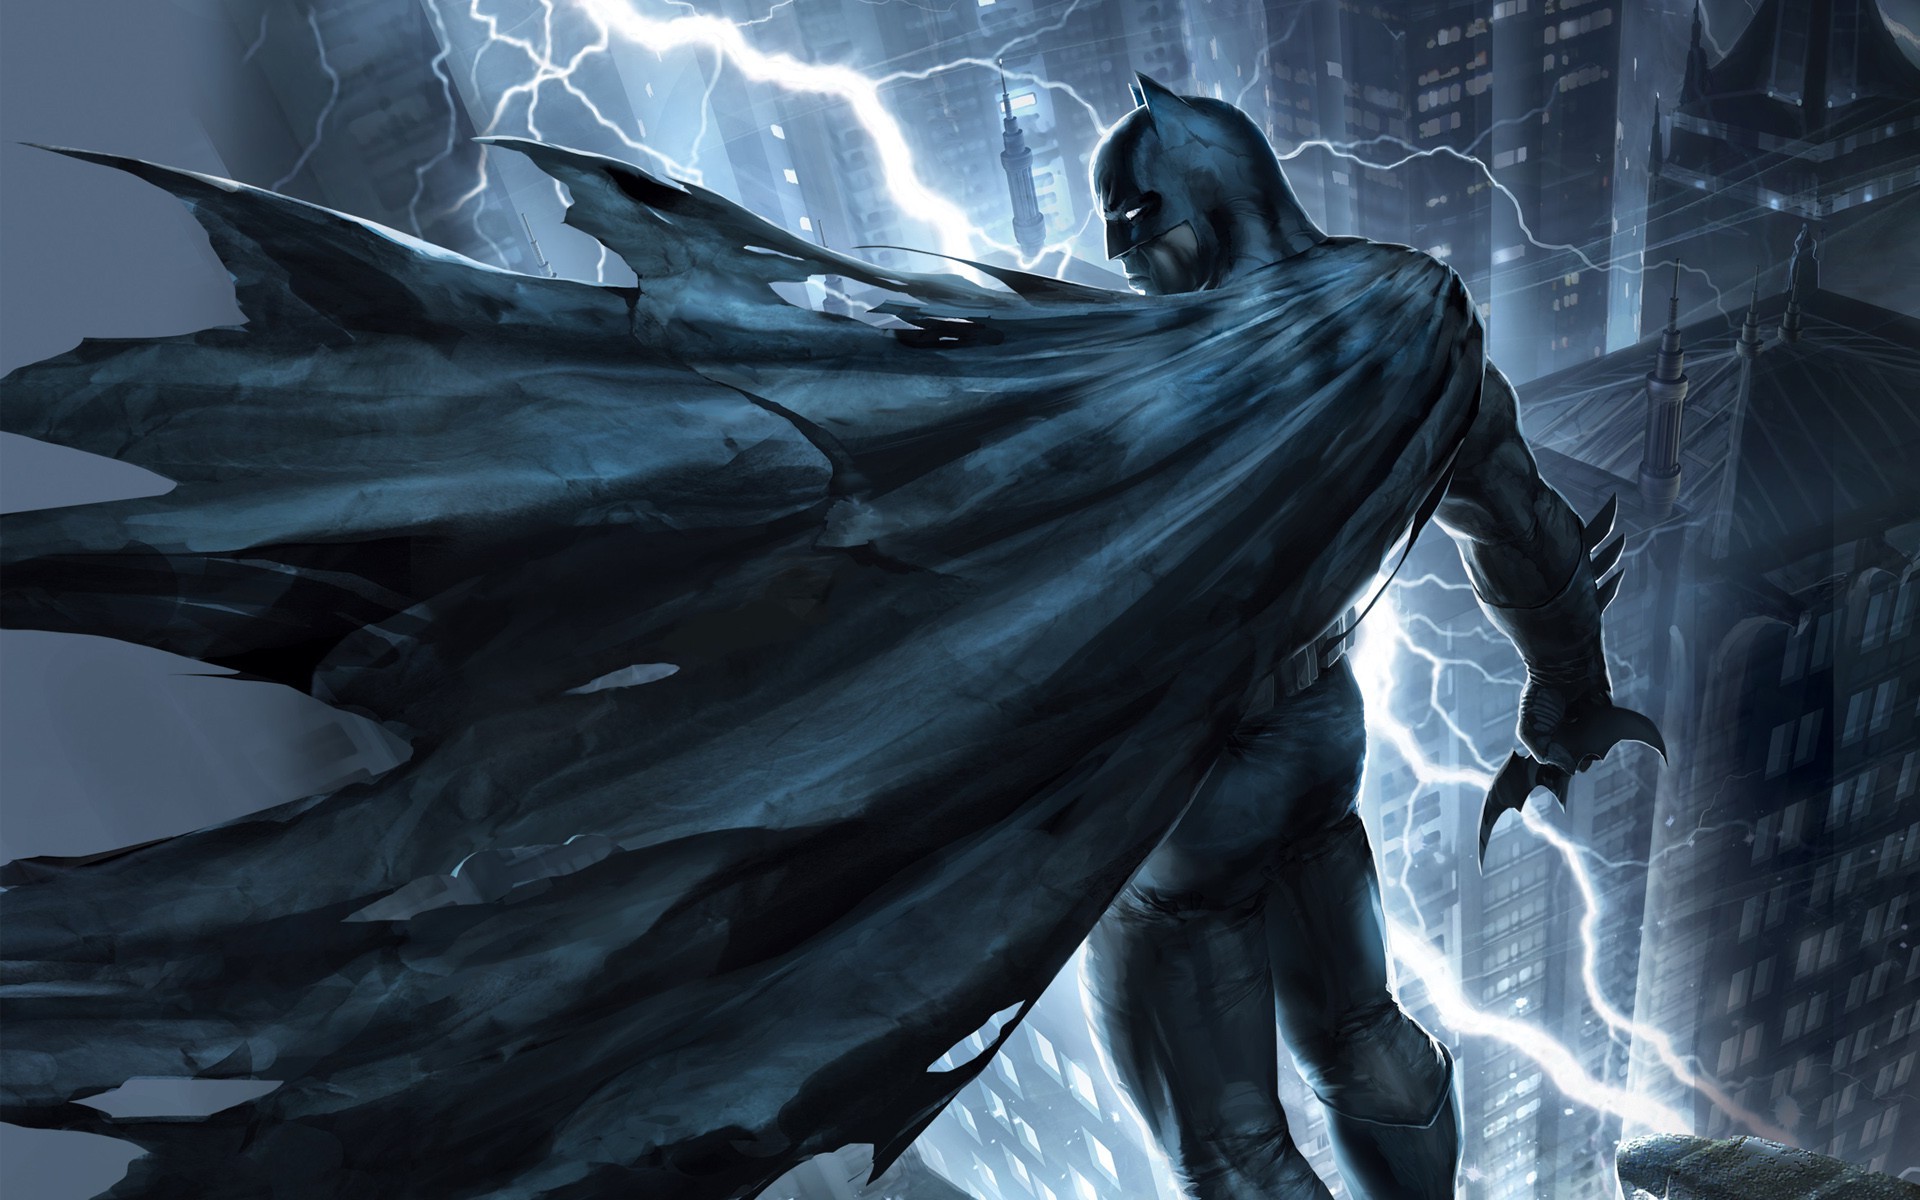 Batman, Injustice Gods Among Us Wallpaper Hd - Dark Knight Returns Wallpaper Hd , HD Wallpaper & Backgrounds